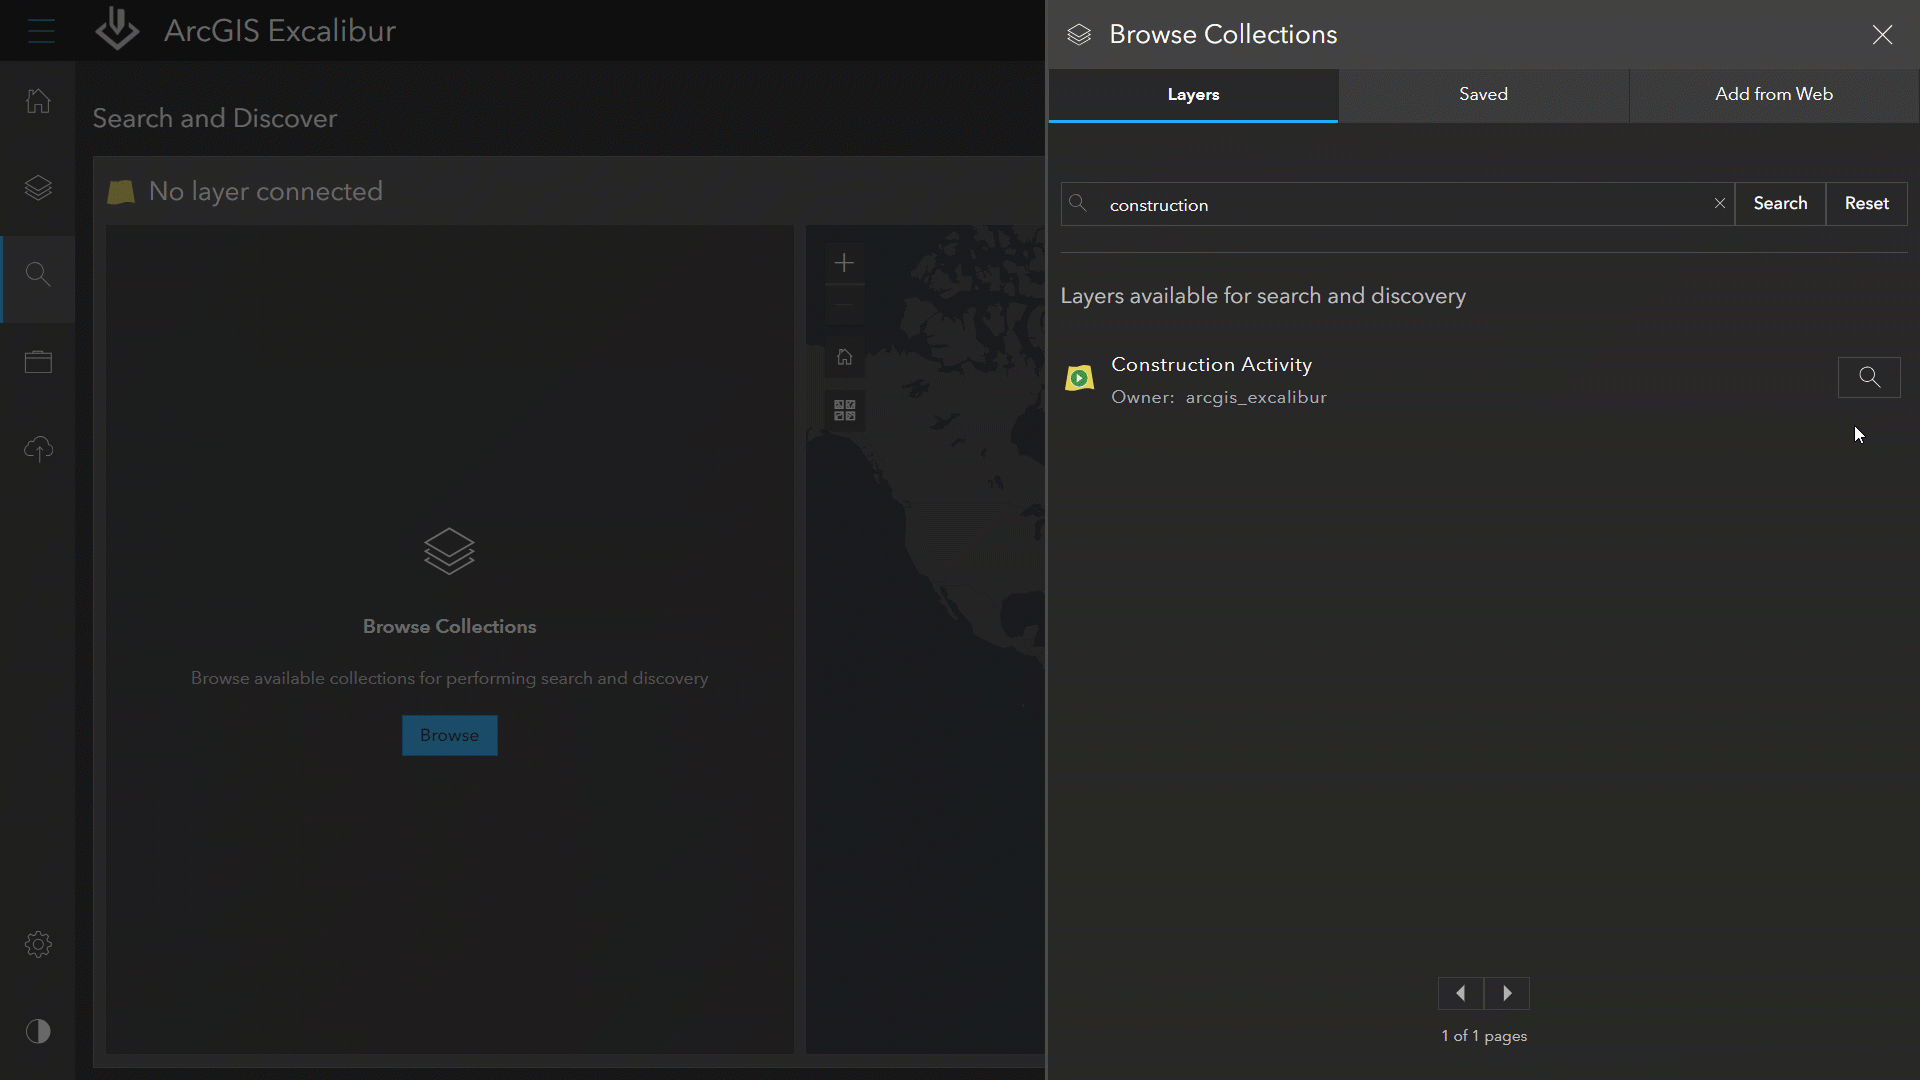 La interfaz de ArcGIS Excalibur muestra un mapa digital y un texto que representa una búsqueda de imágenes